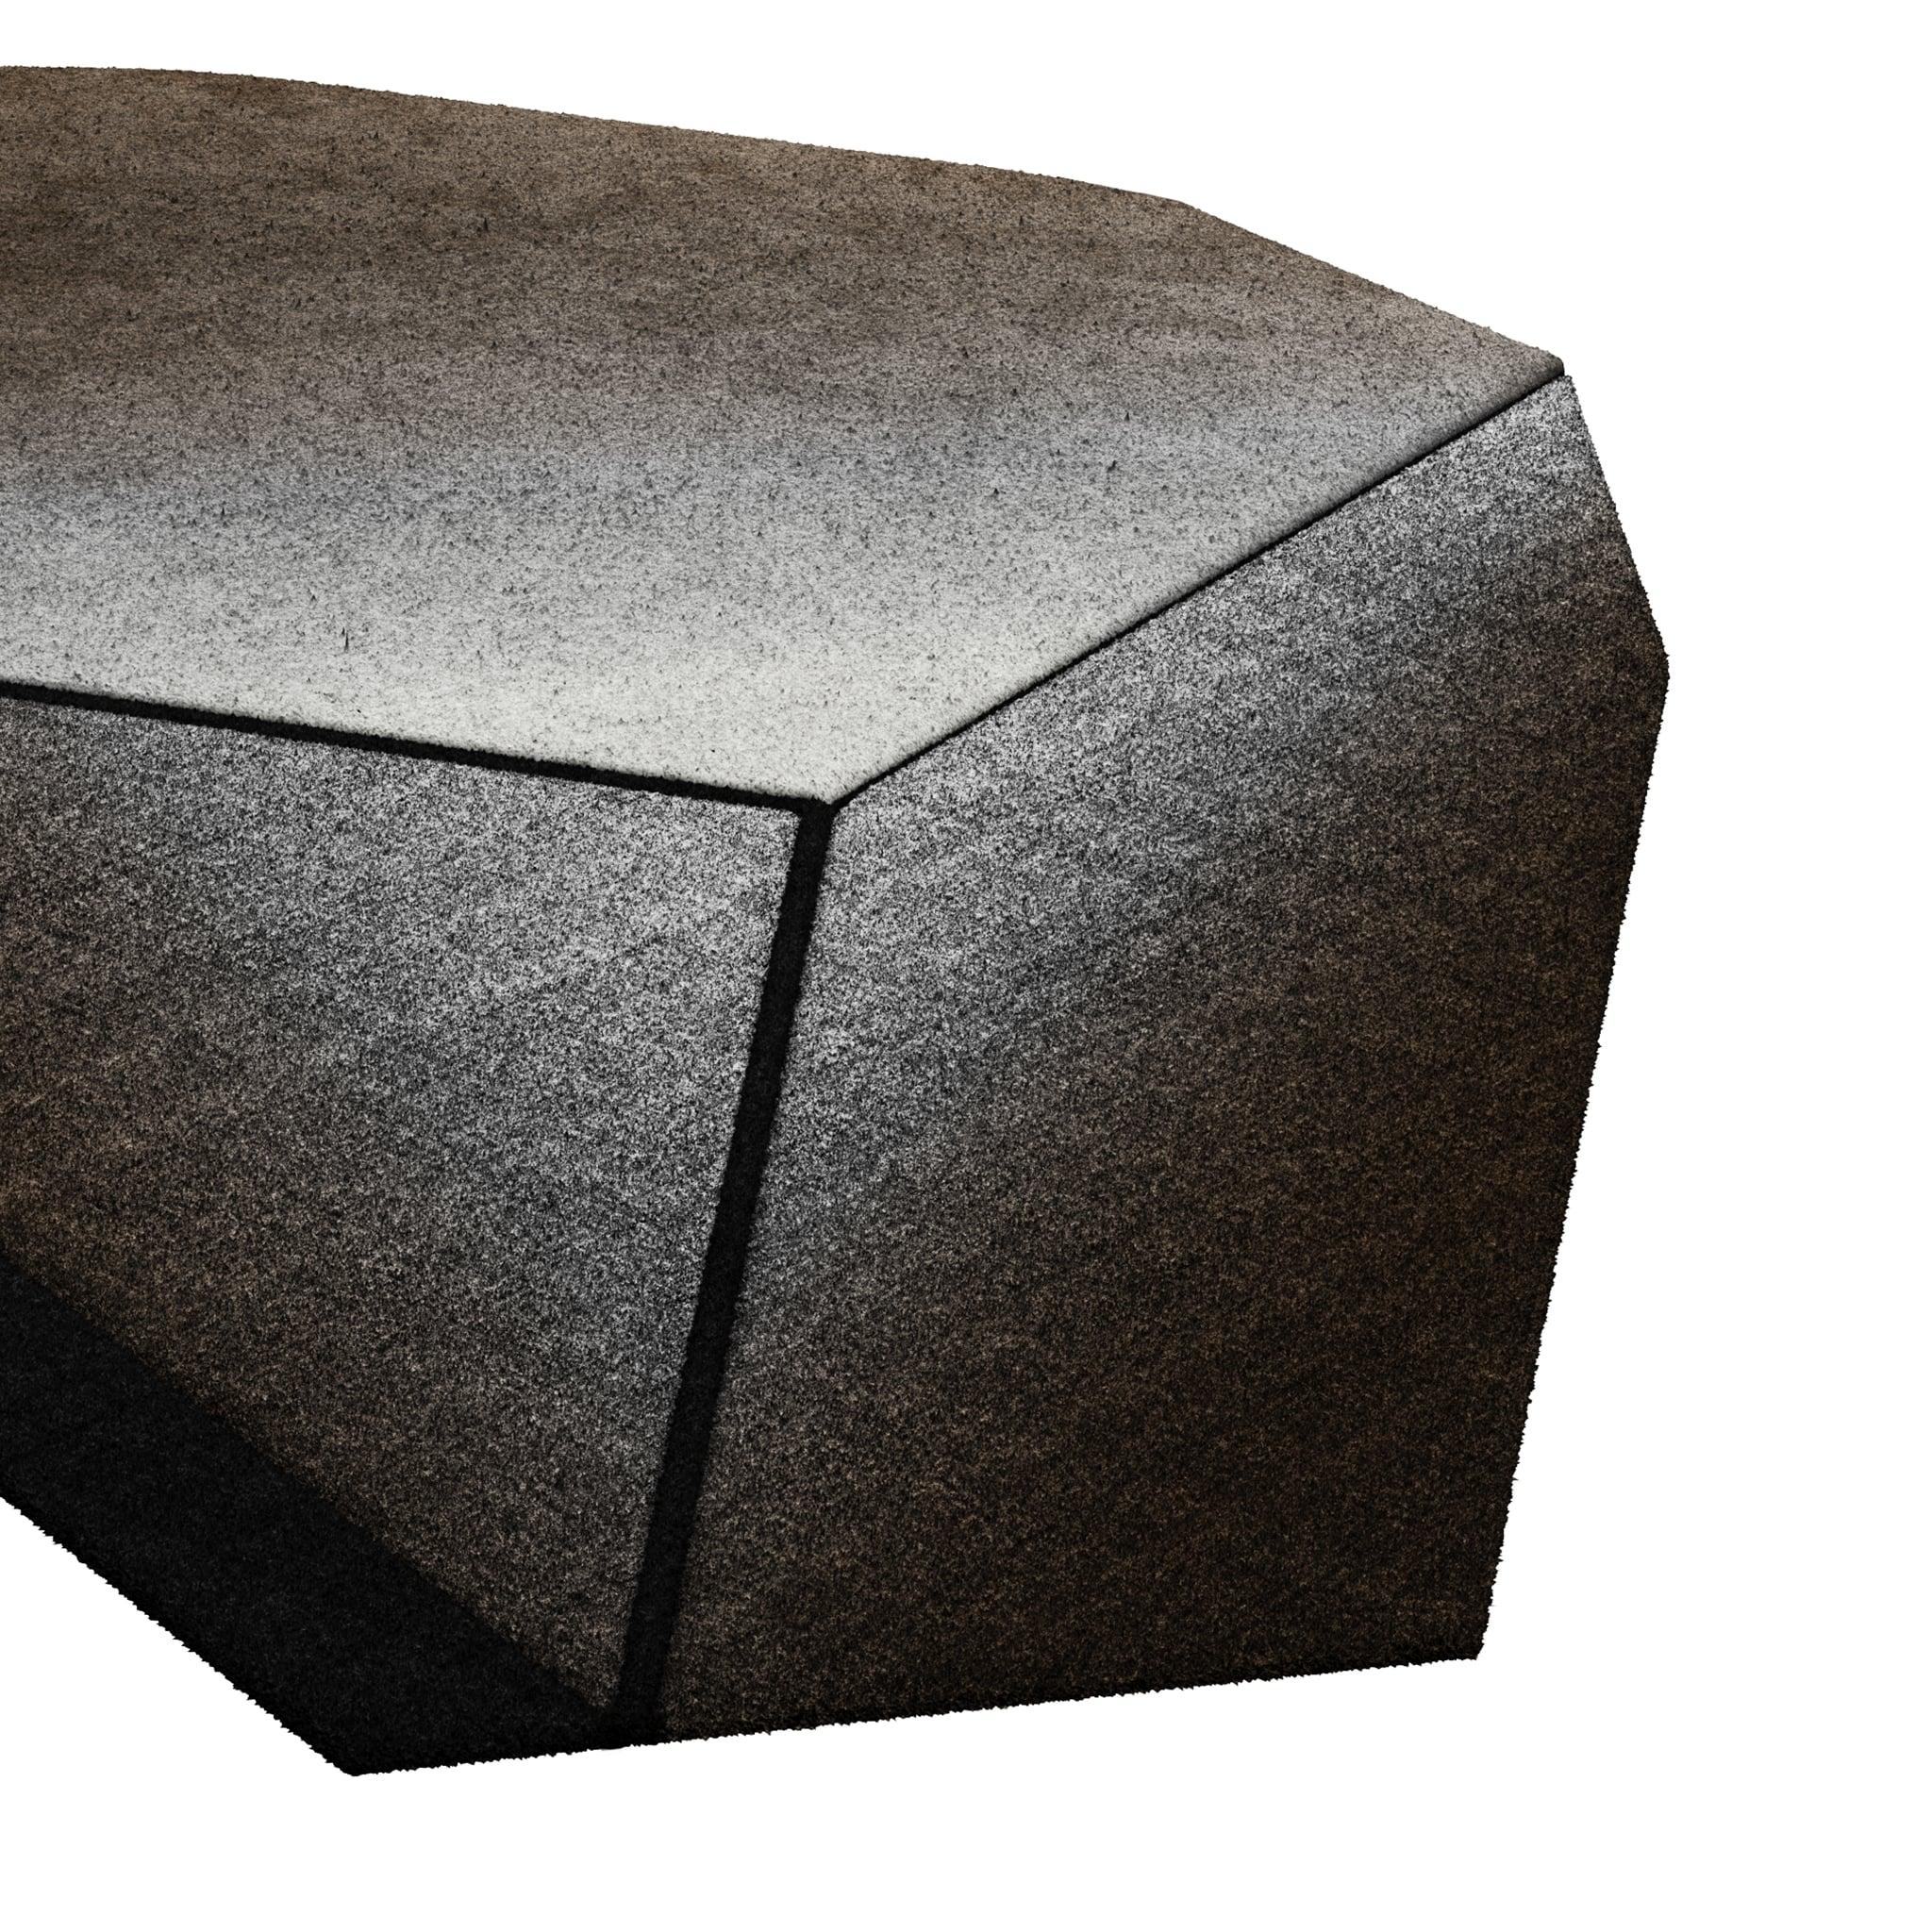 Tapis Retro #008 ist ein Retro-Teppich mit unregelmäßiger Form und monochromen Farbtönen. Inspiriert von architektonischen Linien, setzt dieser geometrische Teppich in jedem Wohnbereich ein Zeichen.

Mit einer 3D-Tufting-Technik, die Schnitt- und